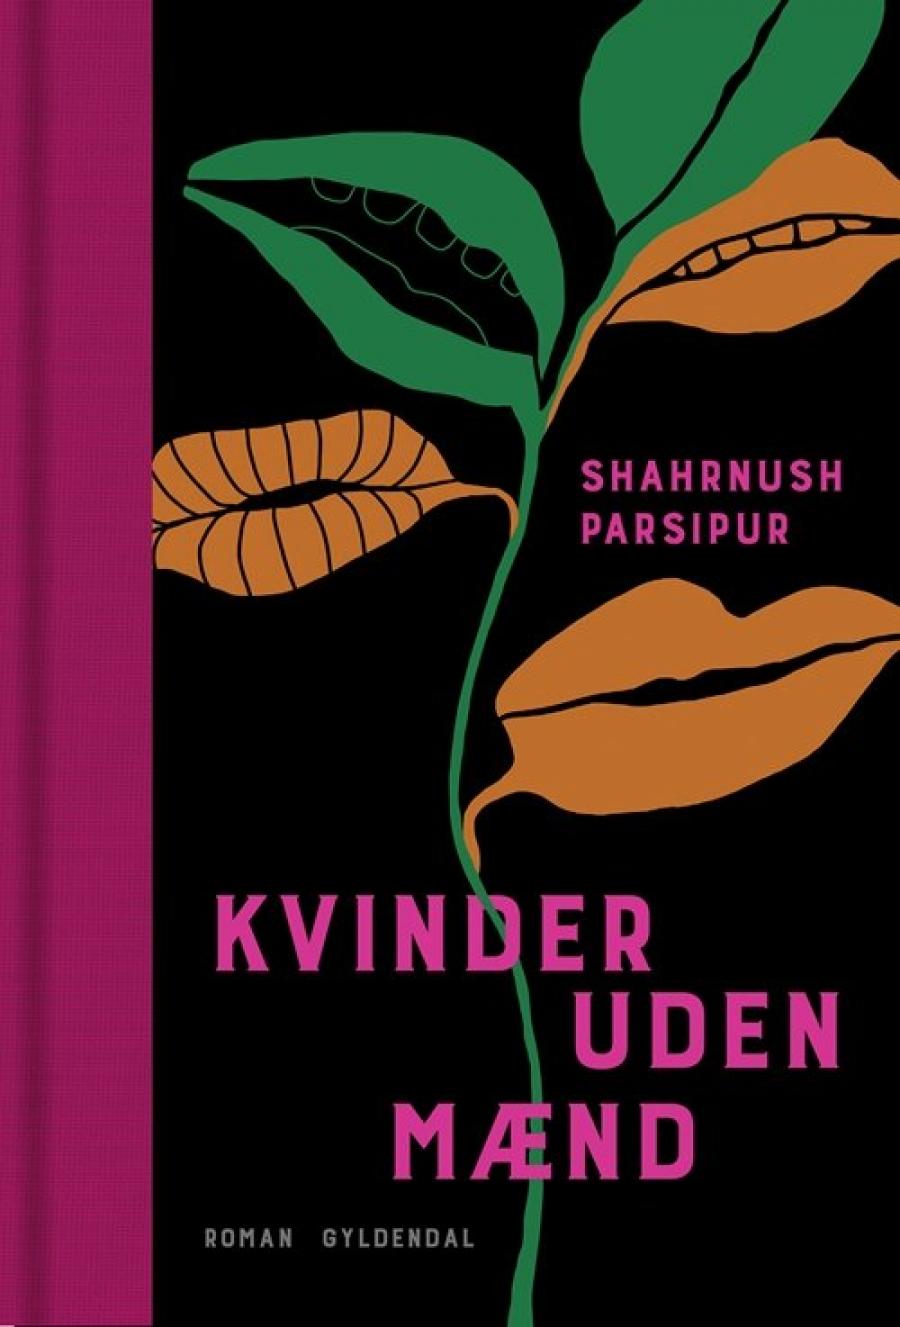 Billede af bogen Kvinder uden mænd af Shahrnush Parsipur